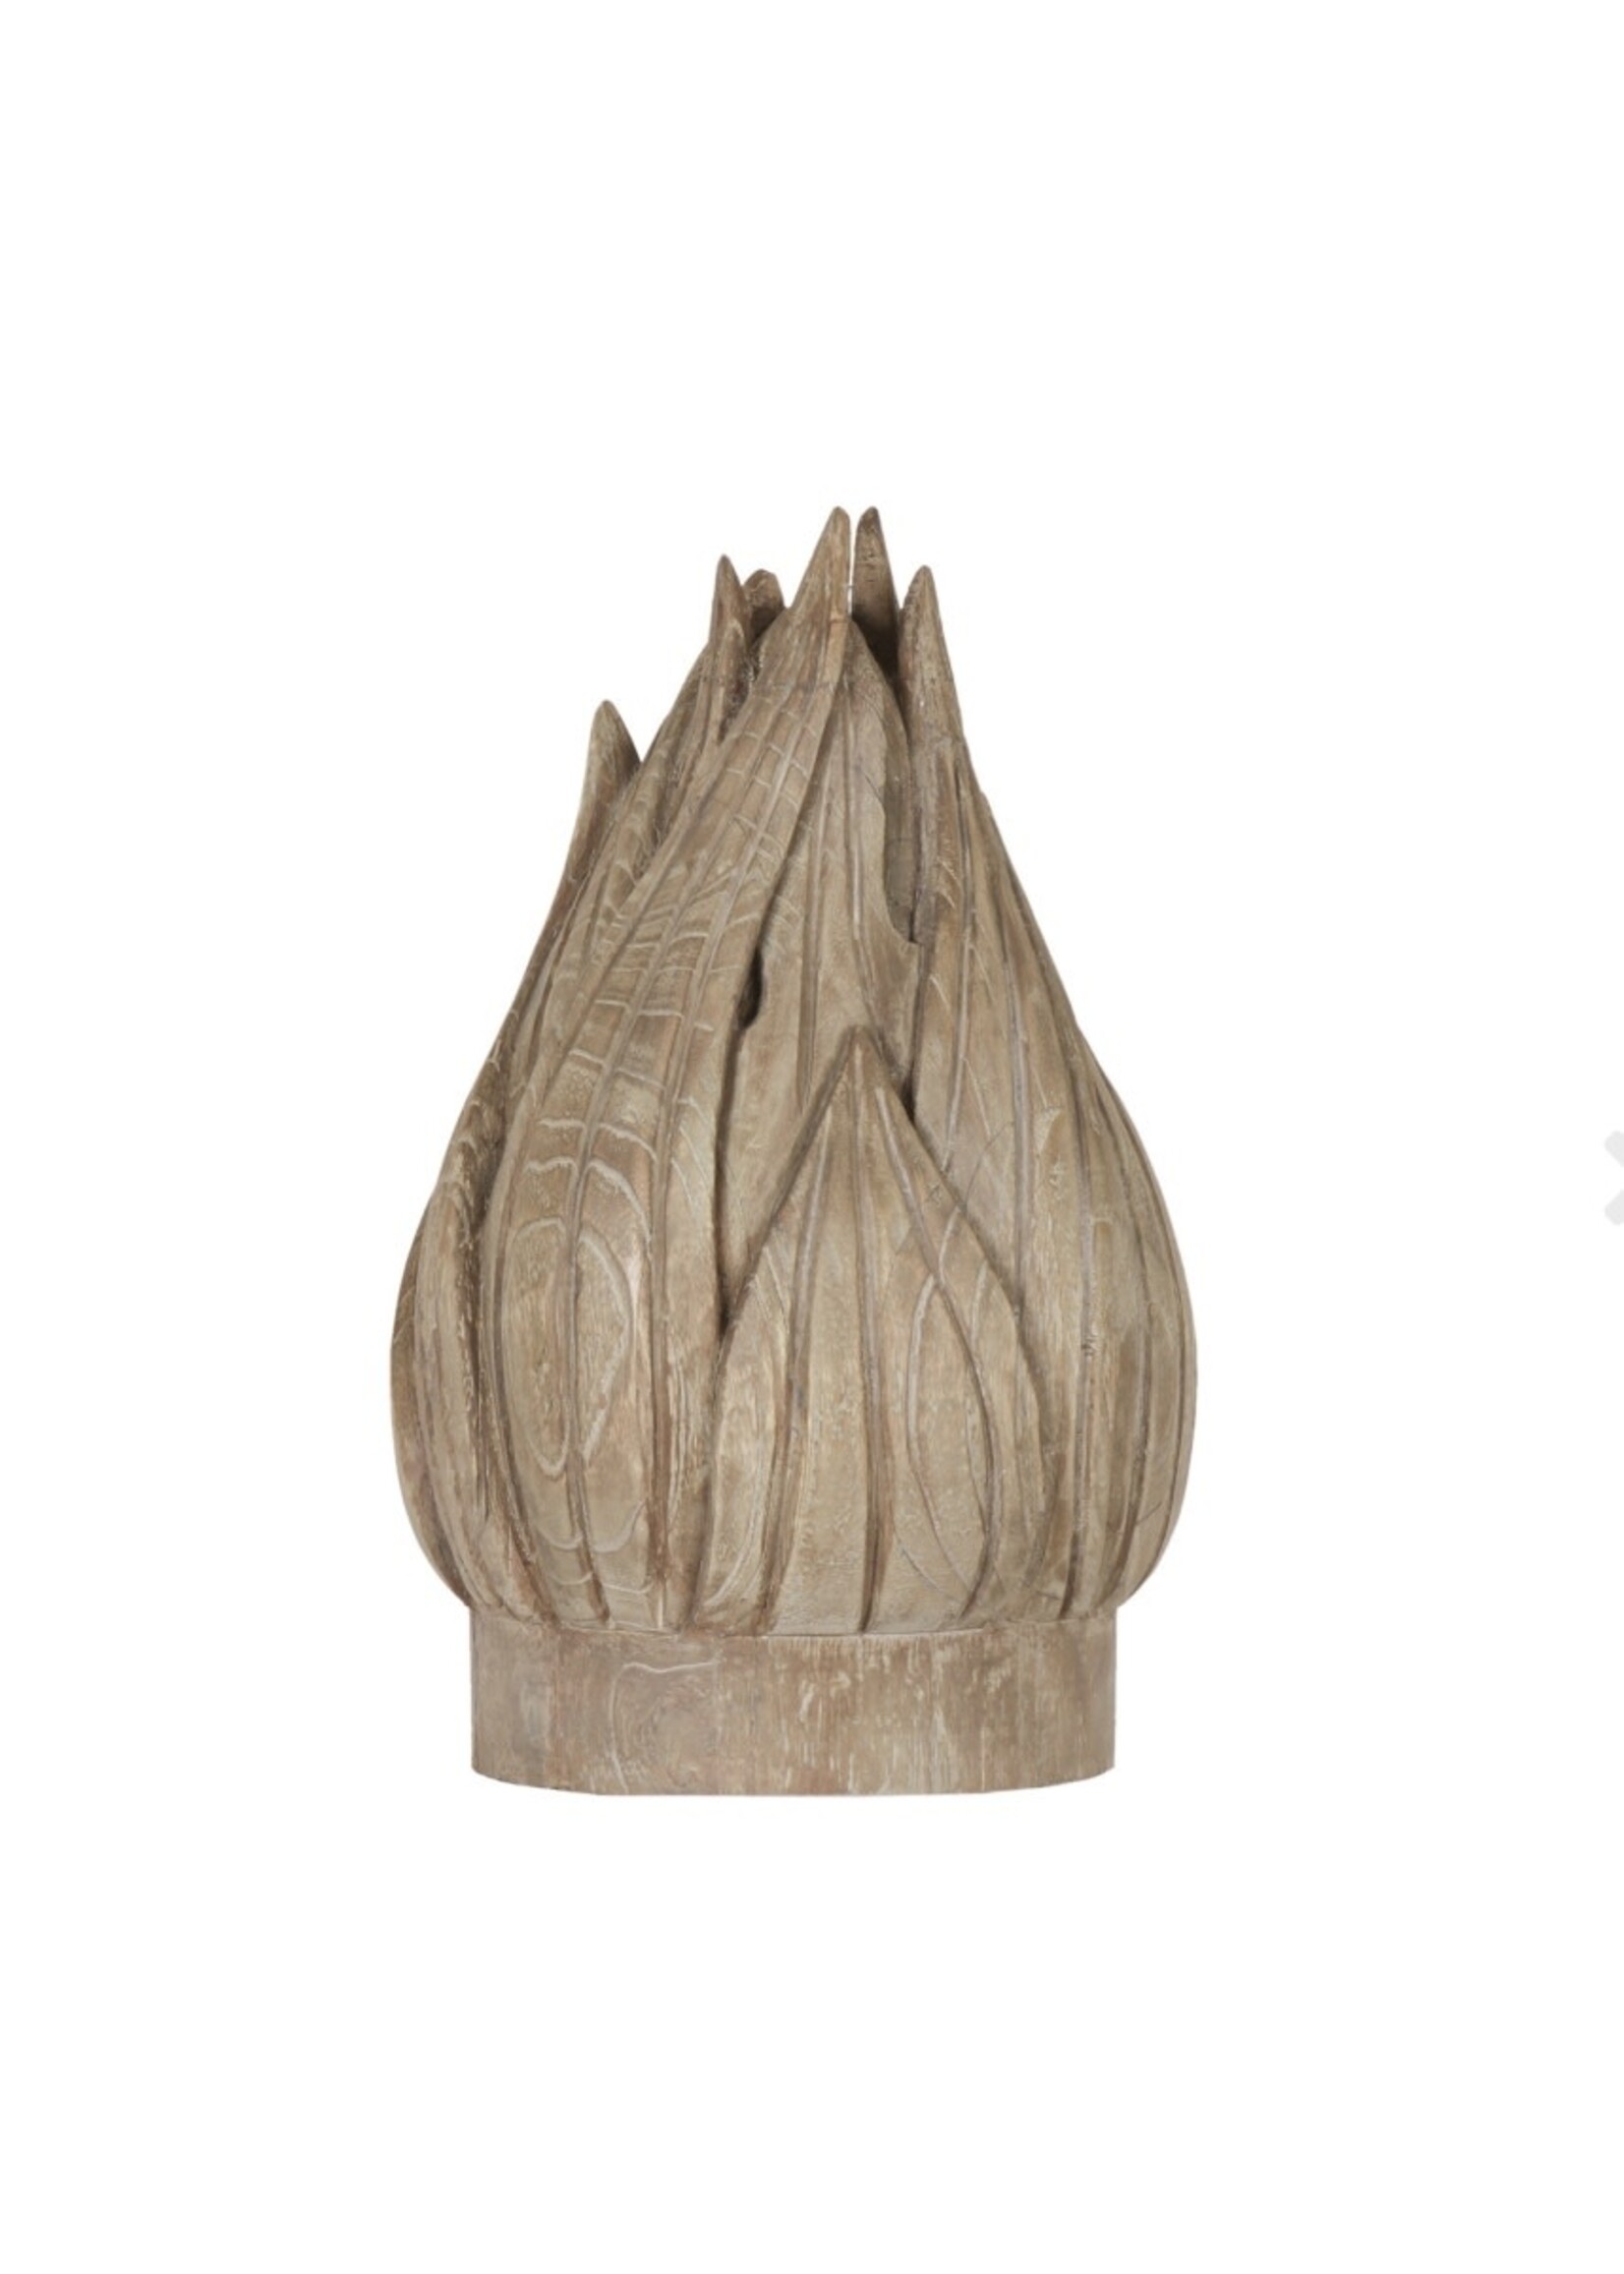 Carved Wooden Artichoke